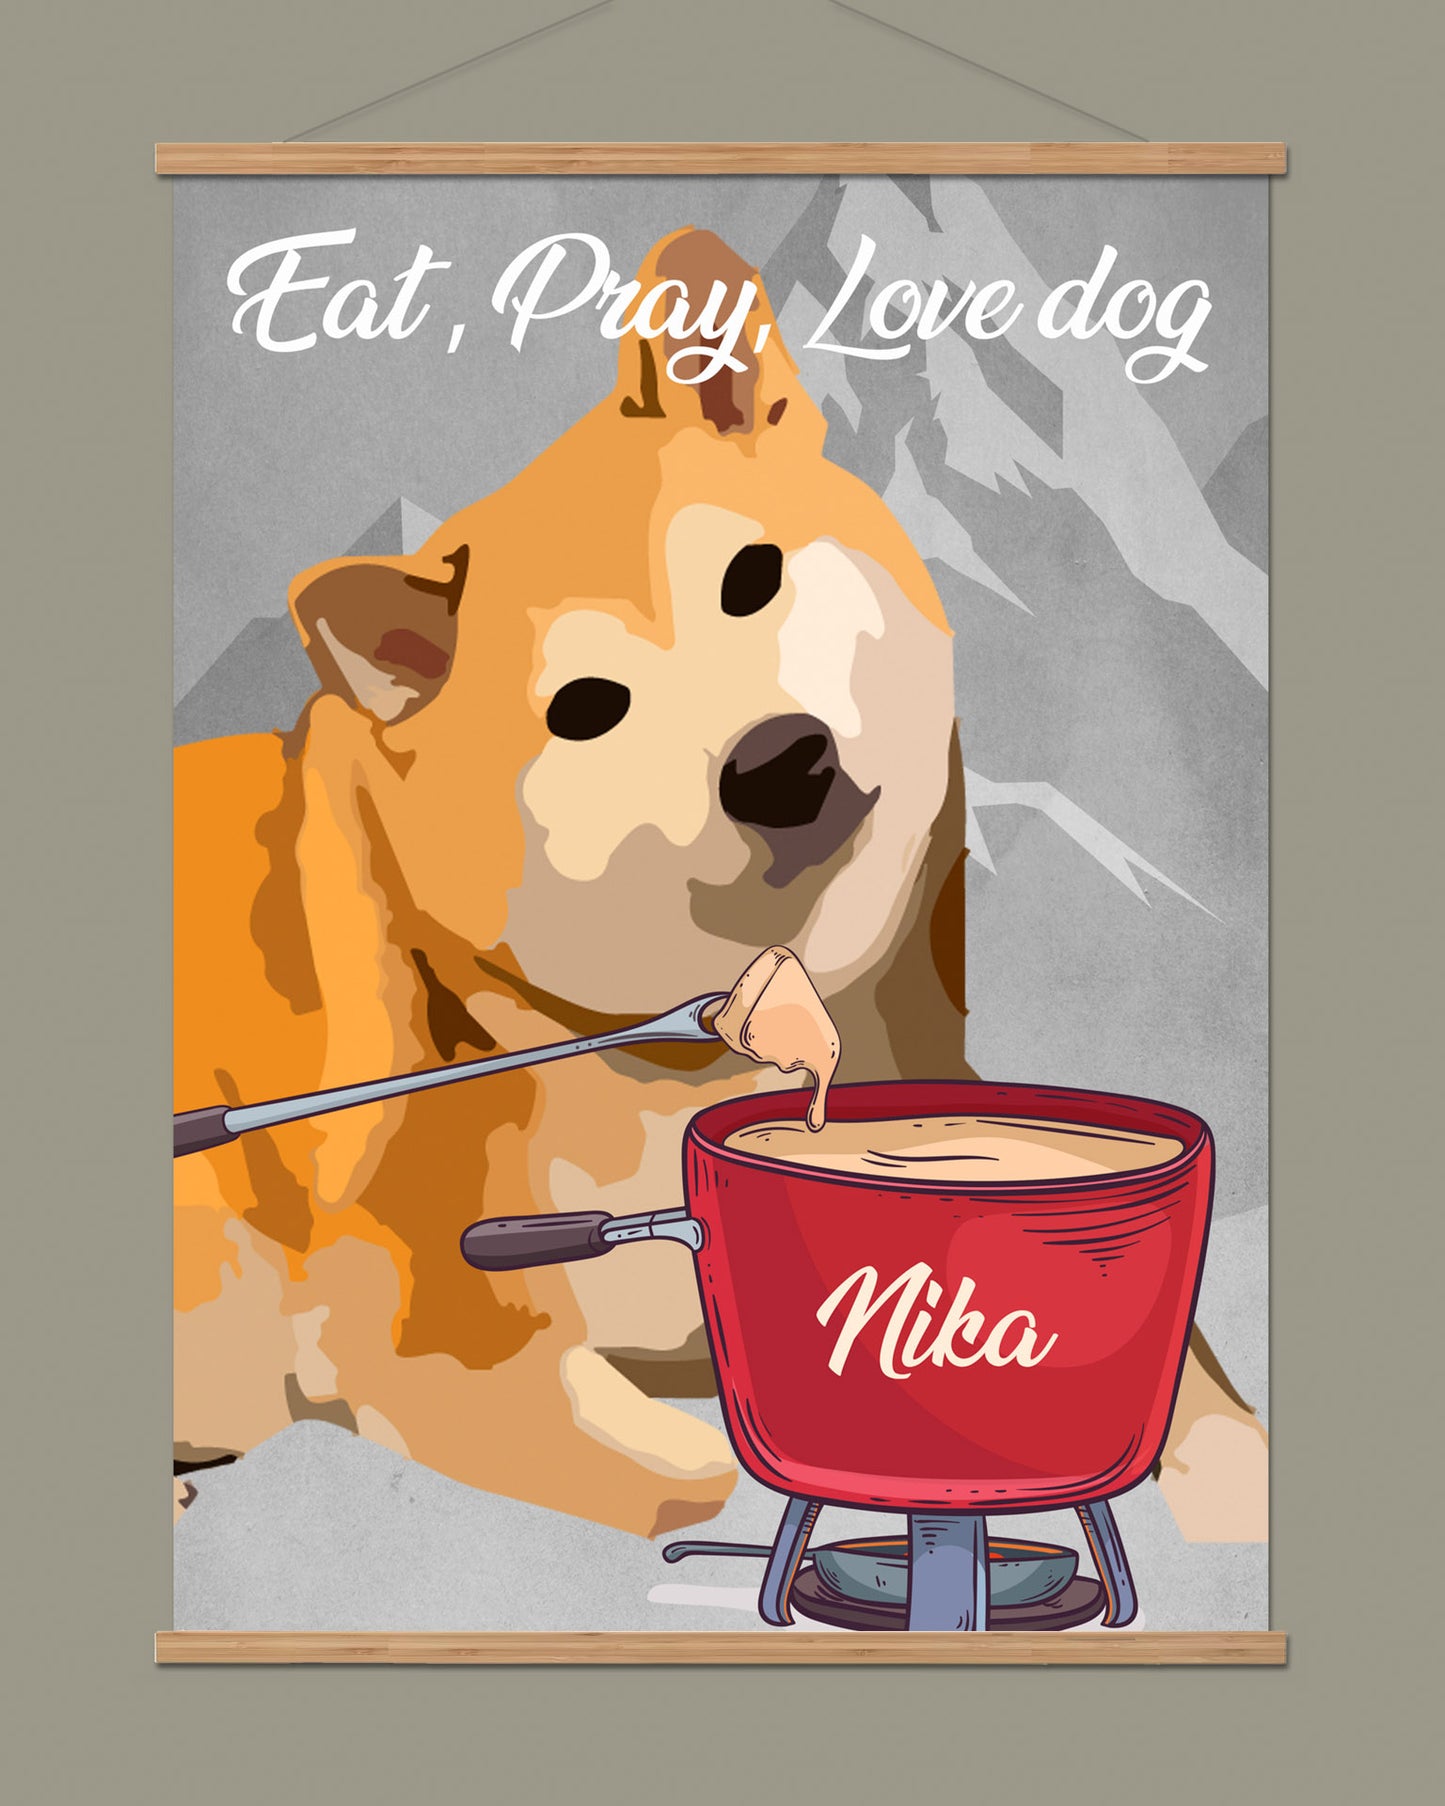 Affiche chien personnalisée "Fondue"